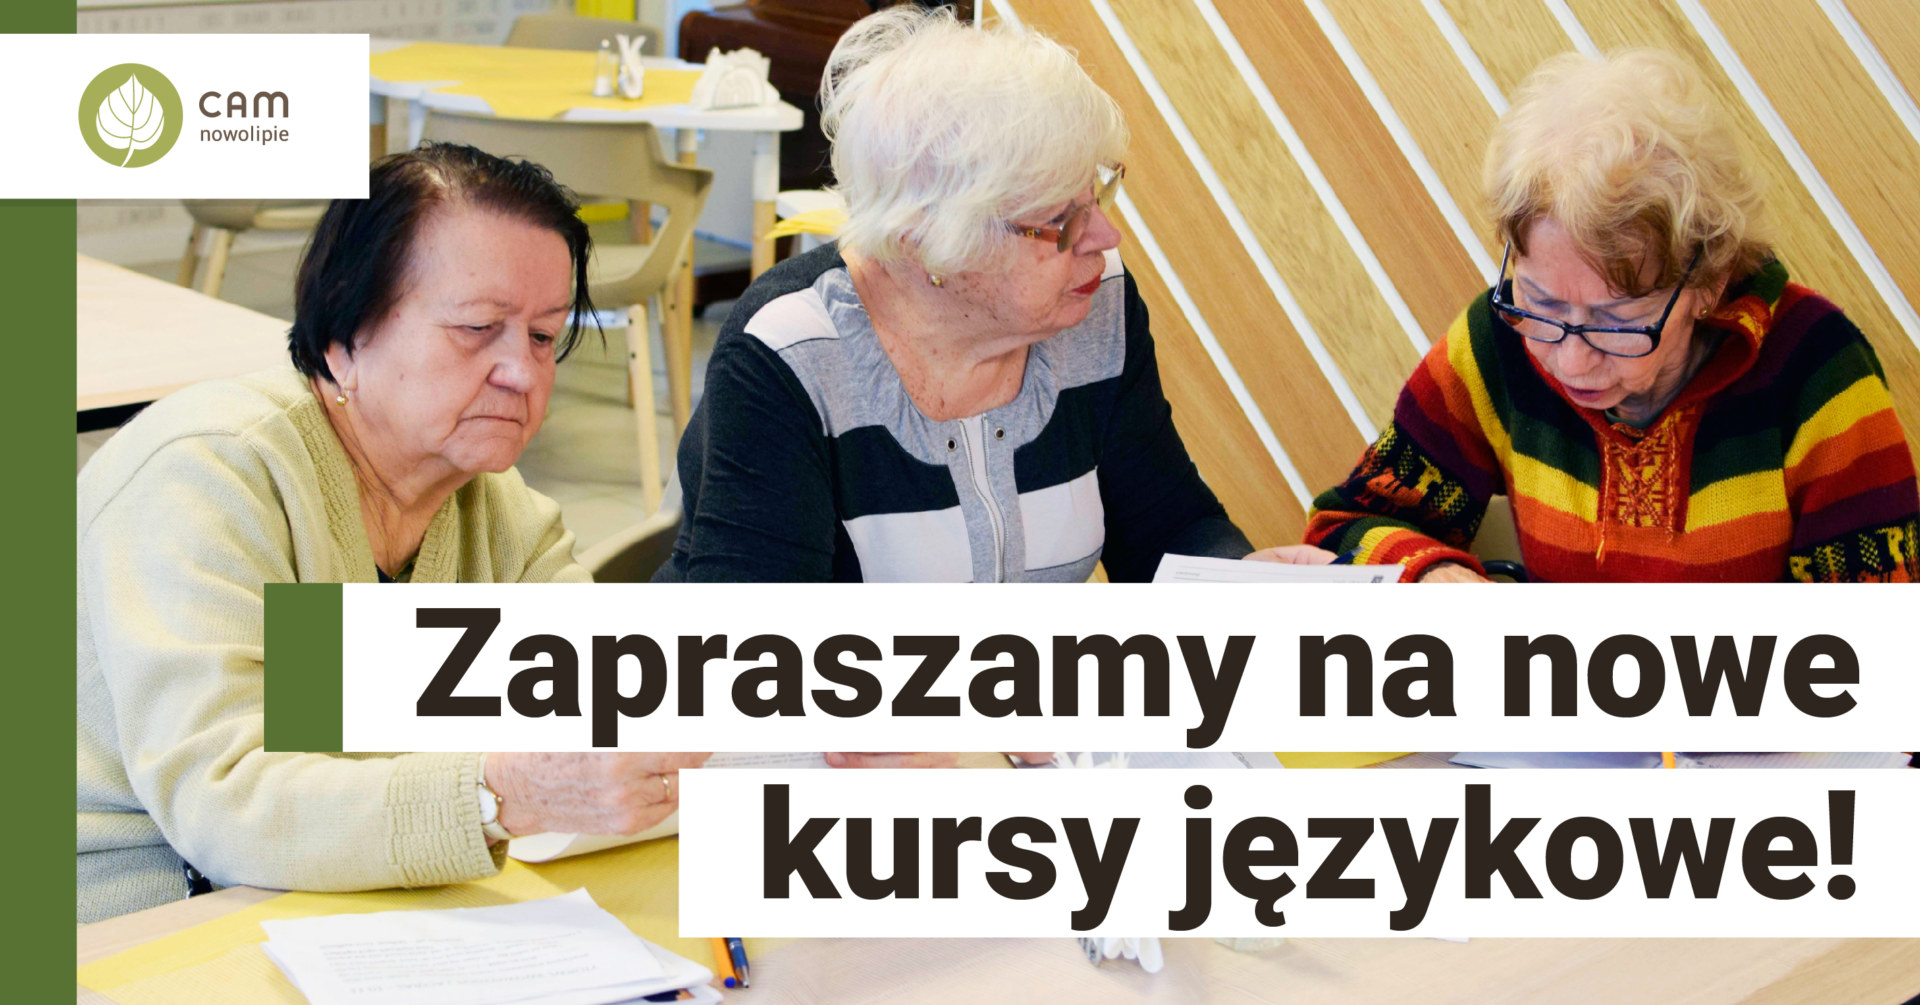 Trzy seniorki siedzące przy stole i napis: Zapraszamy na nowe kursy językowe